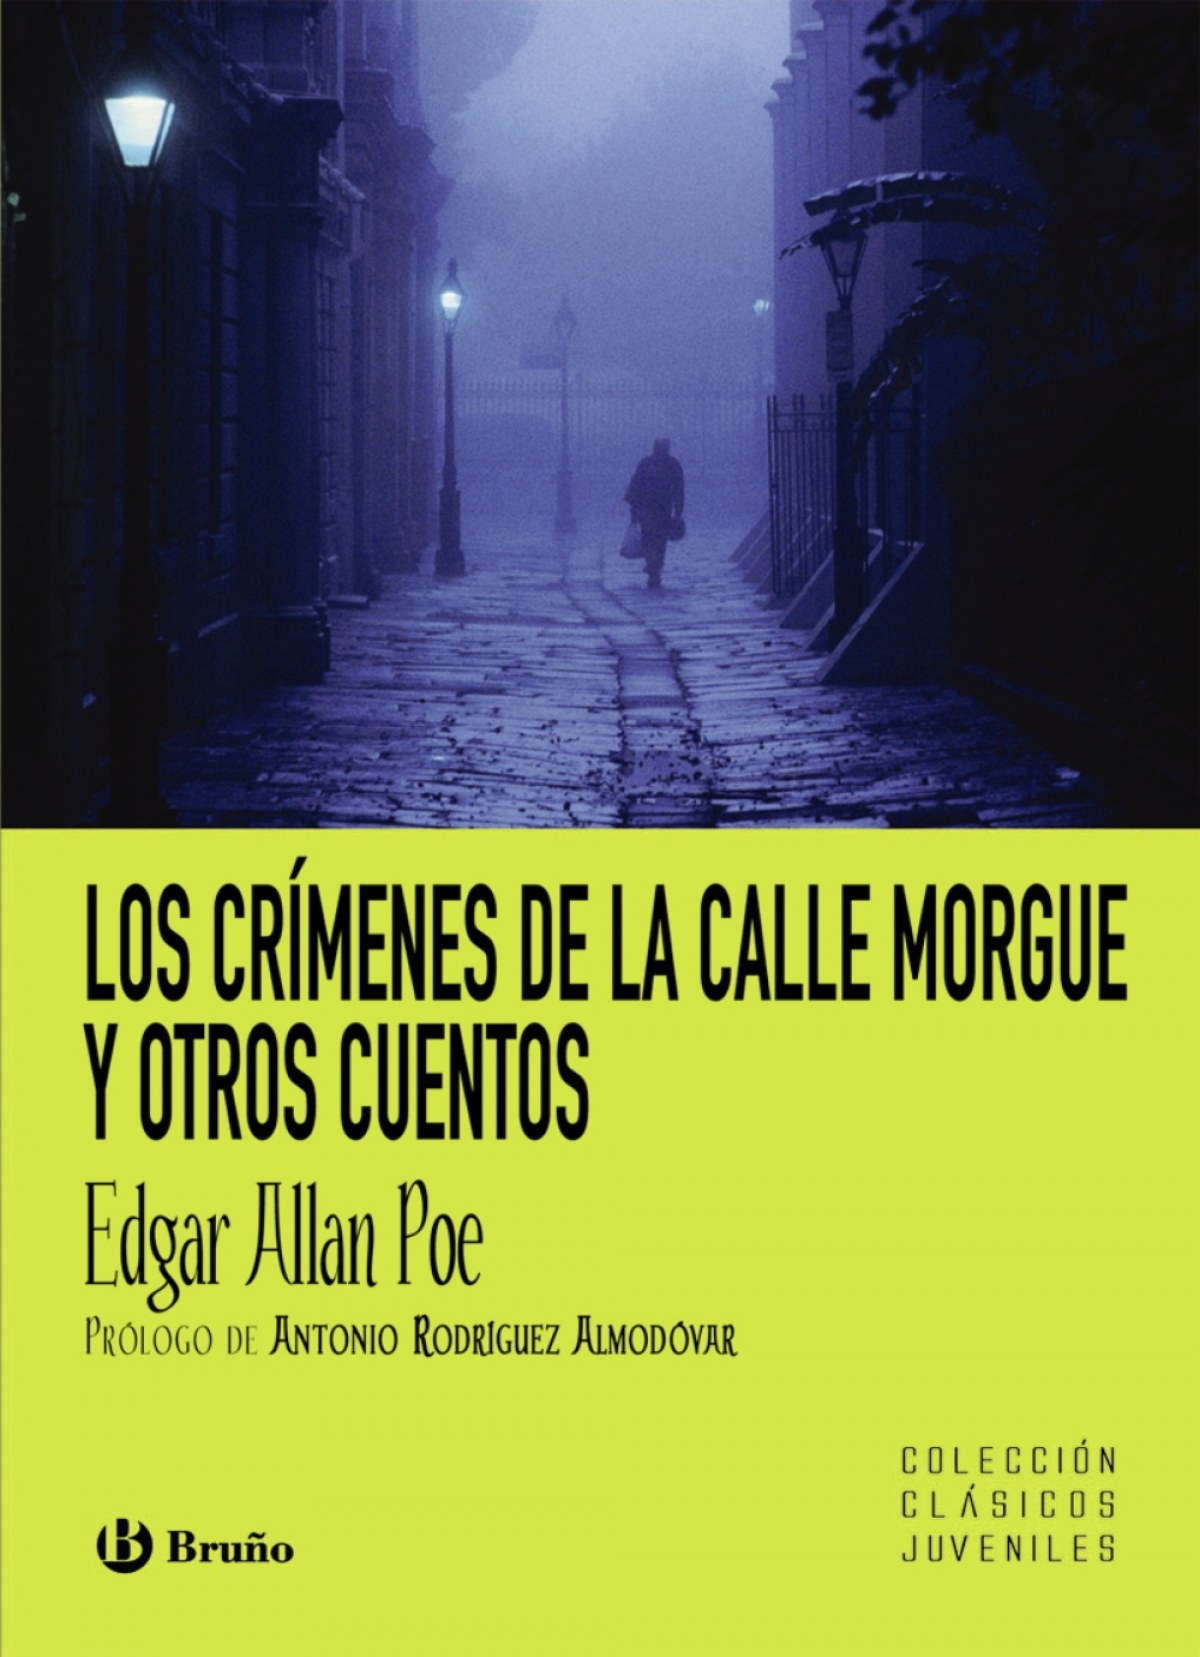 Los crímenes de la calle Morgue y otros cuentos - Poe, Edgar Allan